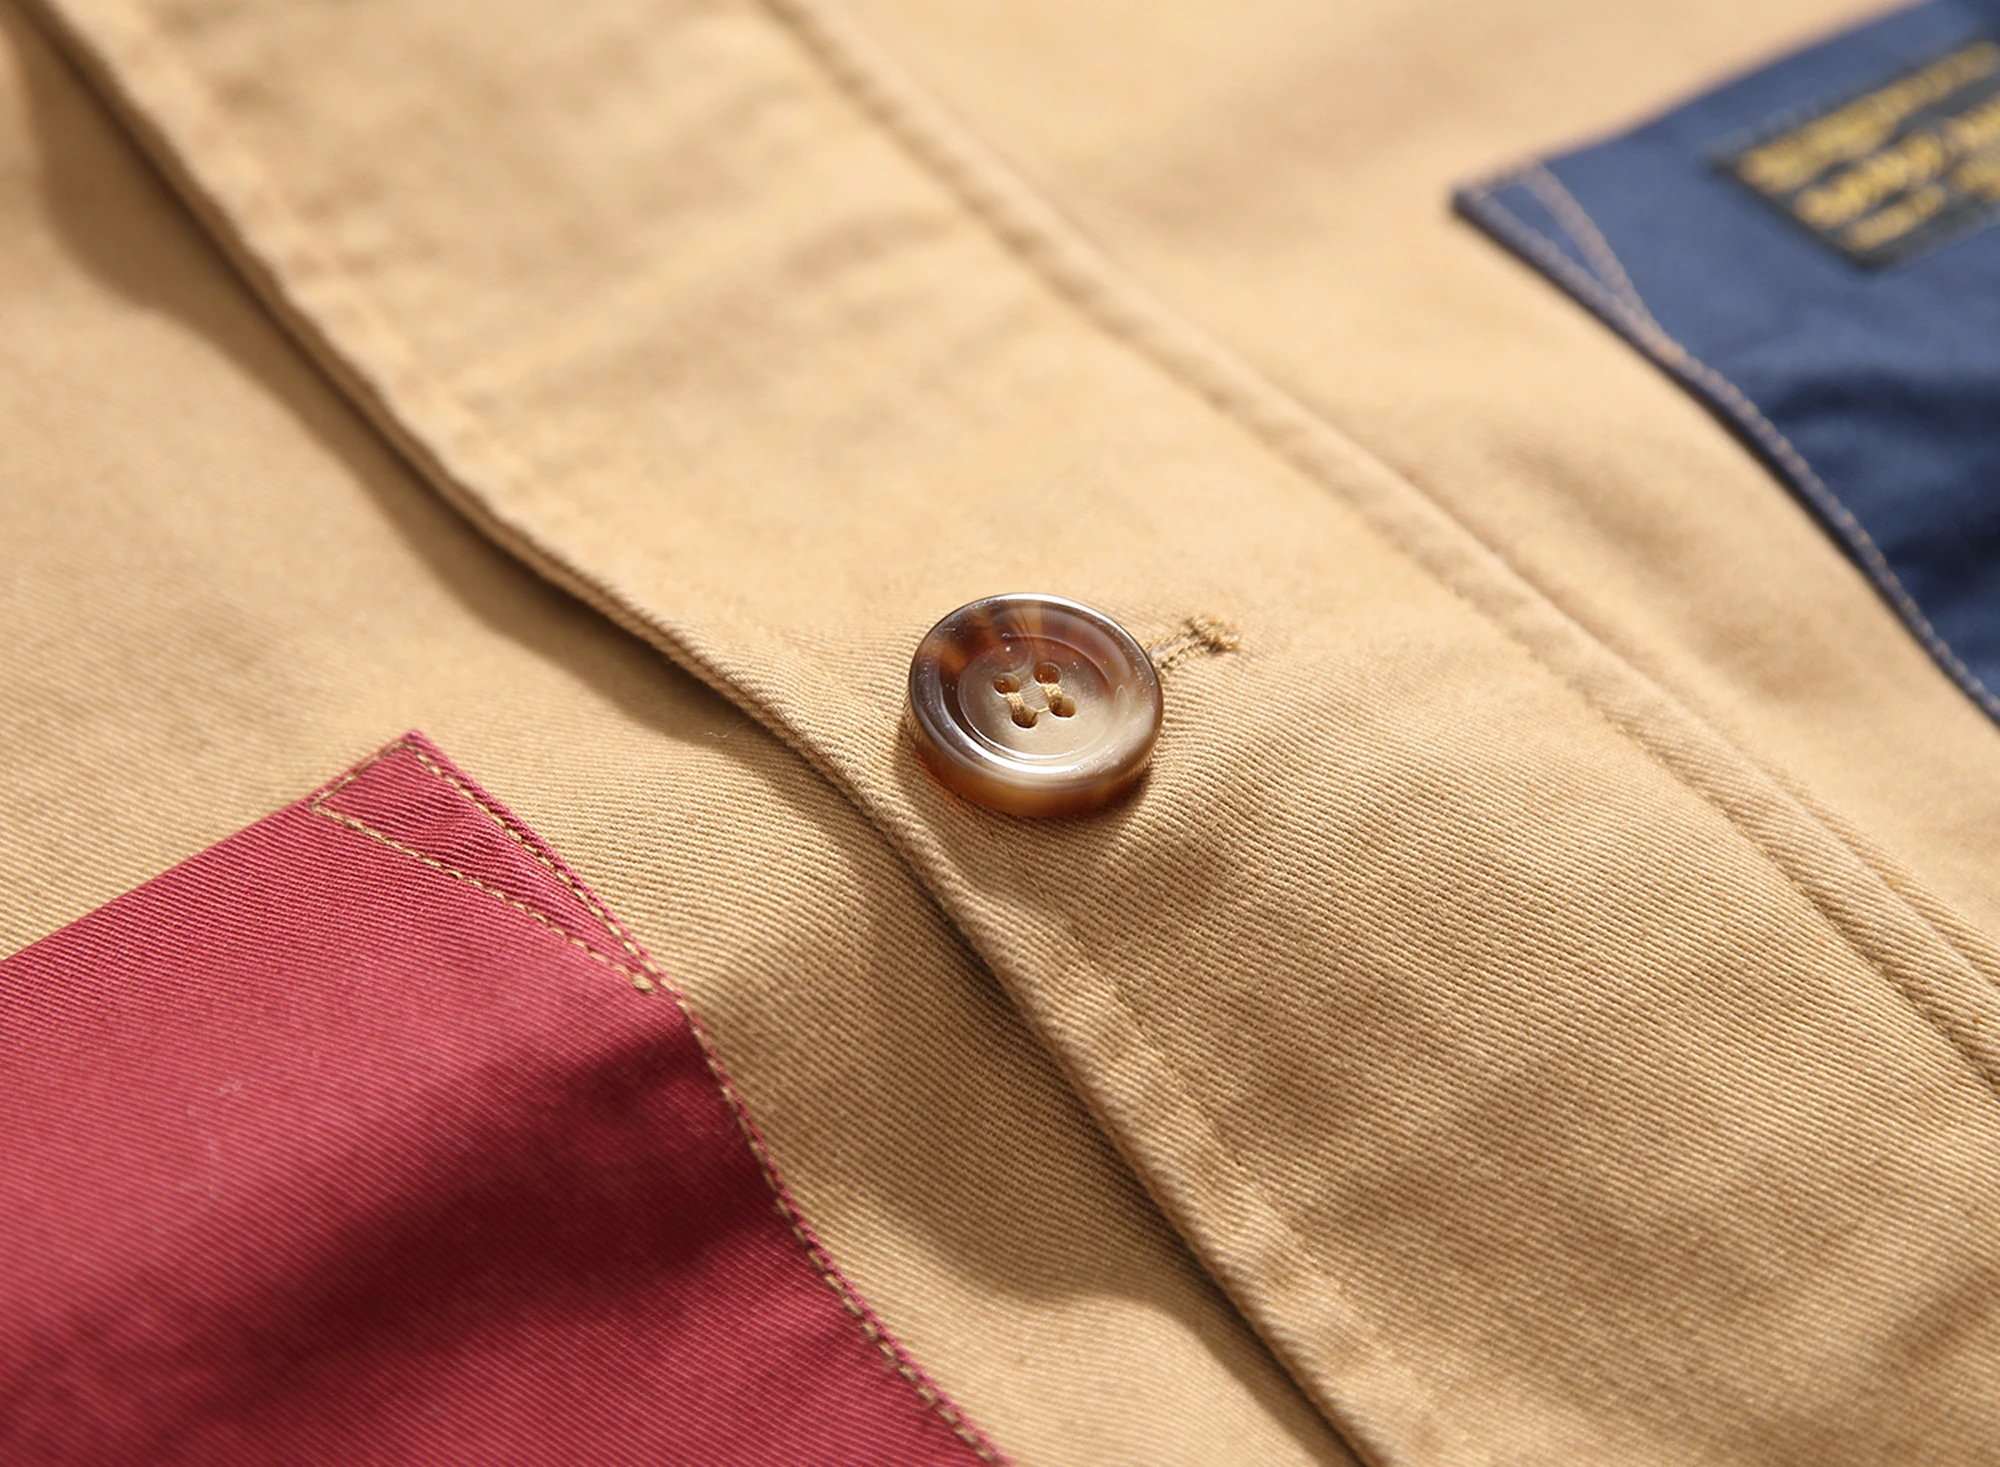 SauceZhan винтажный Тренч Aramco цвета хаки с подходящим пастельным соусом и саржевым хлопковым пальто куртка мужской Тренч